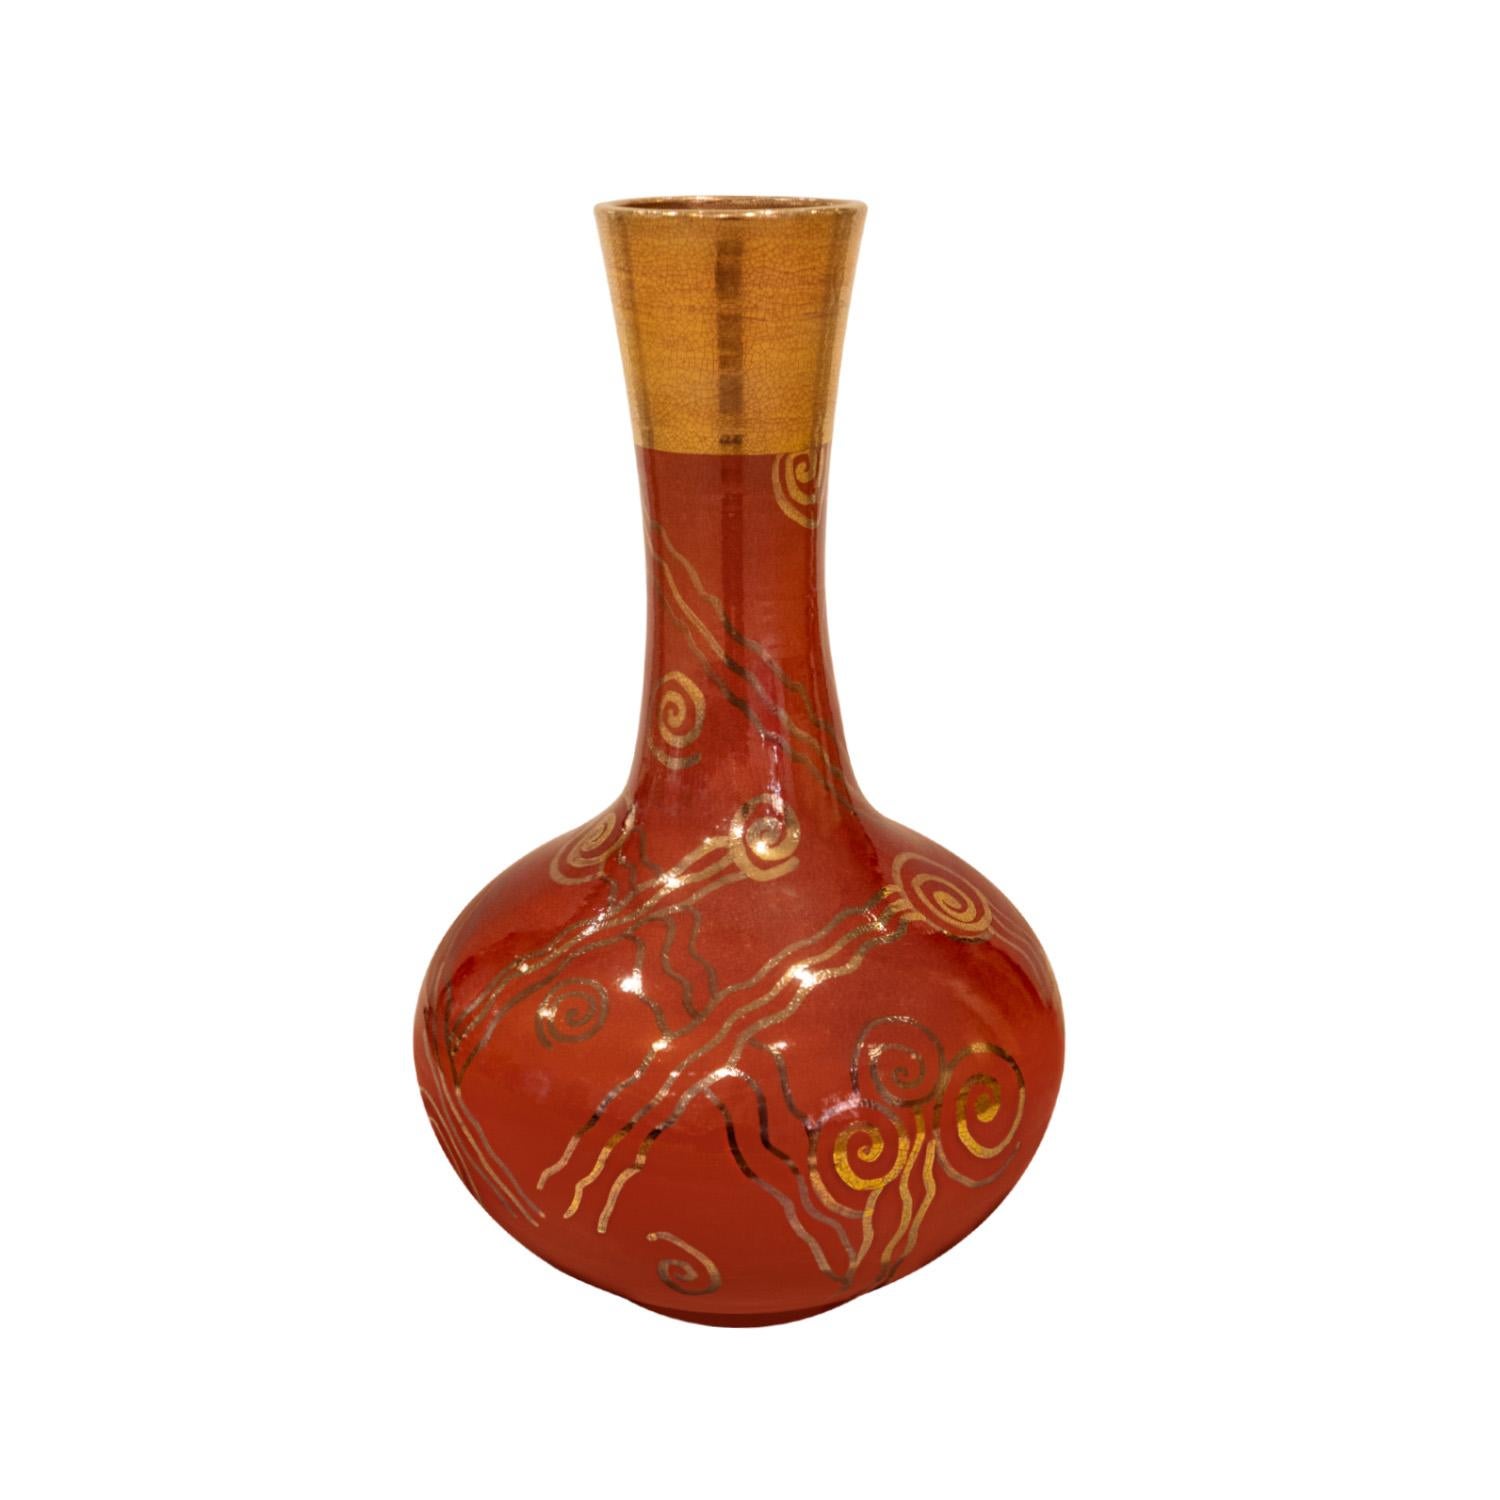 Vase en céramique tourné à la main, glaçure rouge chinoise avec motif décoratif appliqué en or, par Gary McCloy, Américain, années 1970 (signé sur le fond). Ce vase est impressionnant et présente une grande profondeur visuelle. La combinaison du